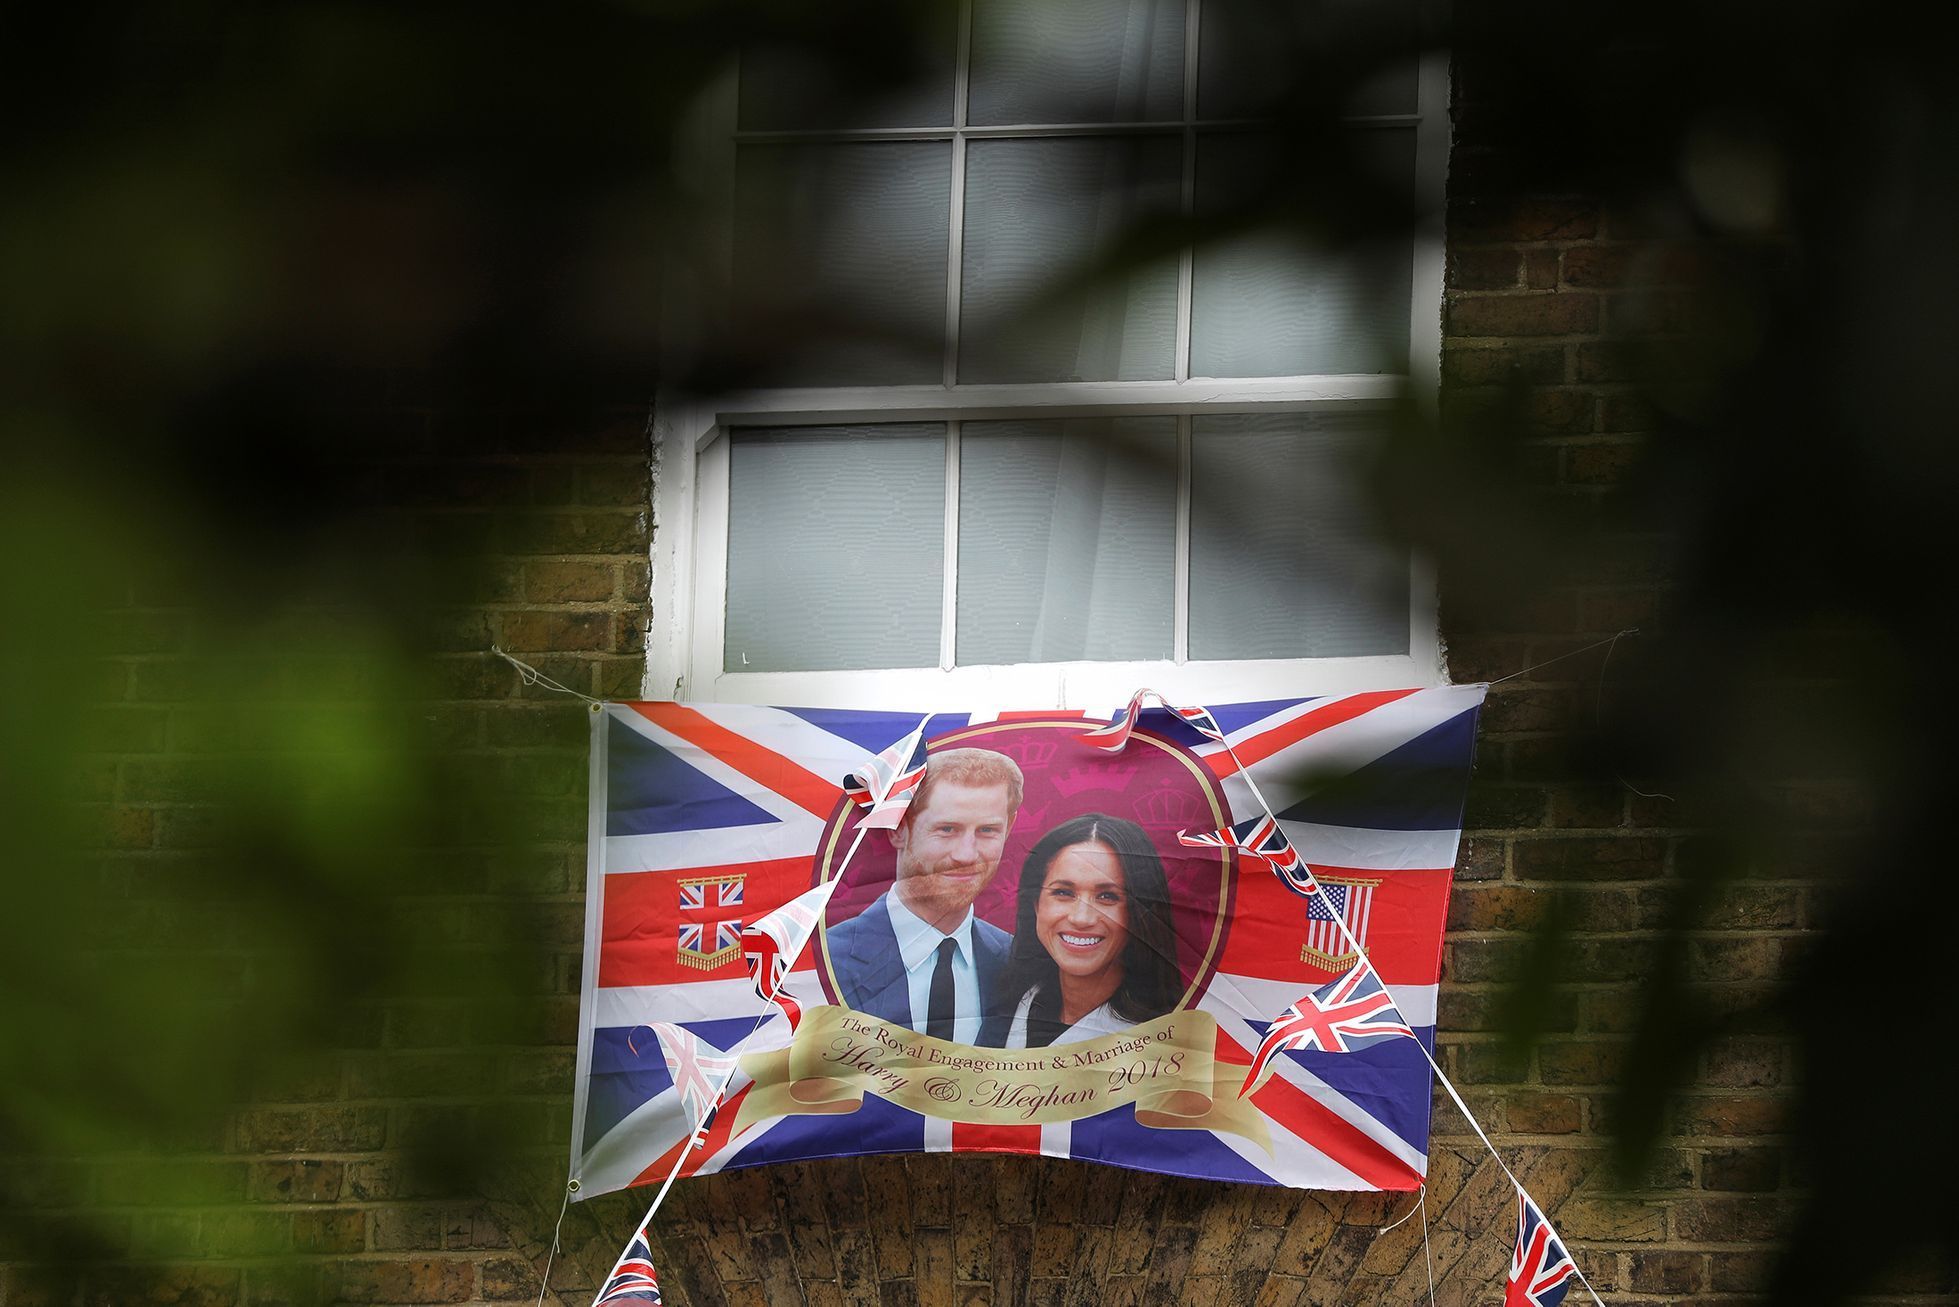 FOTOGALERIE / Přípravy na královskou svatbu / Princ Harry a Meghan Markle / Reuters / 13